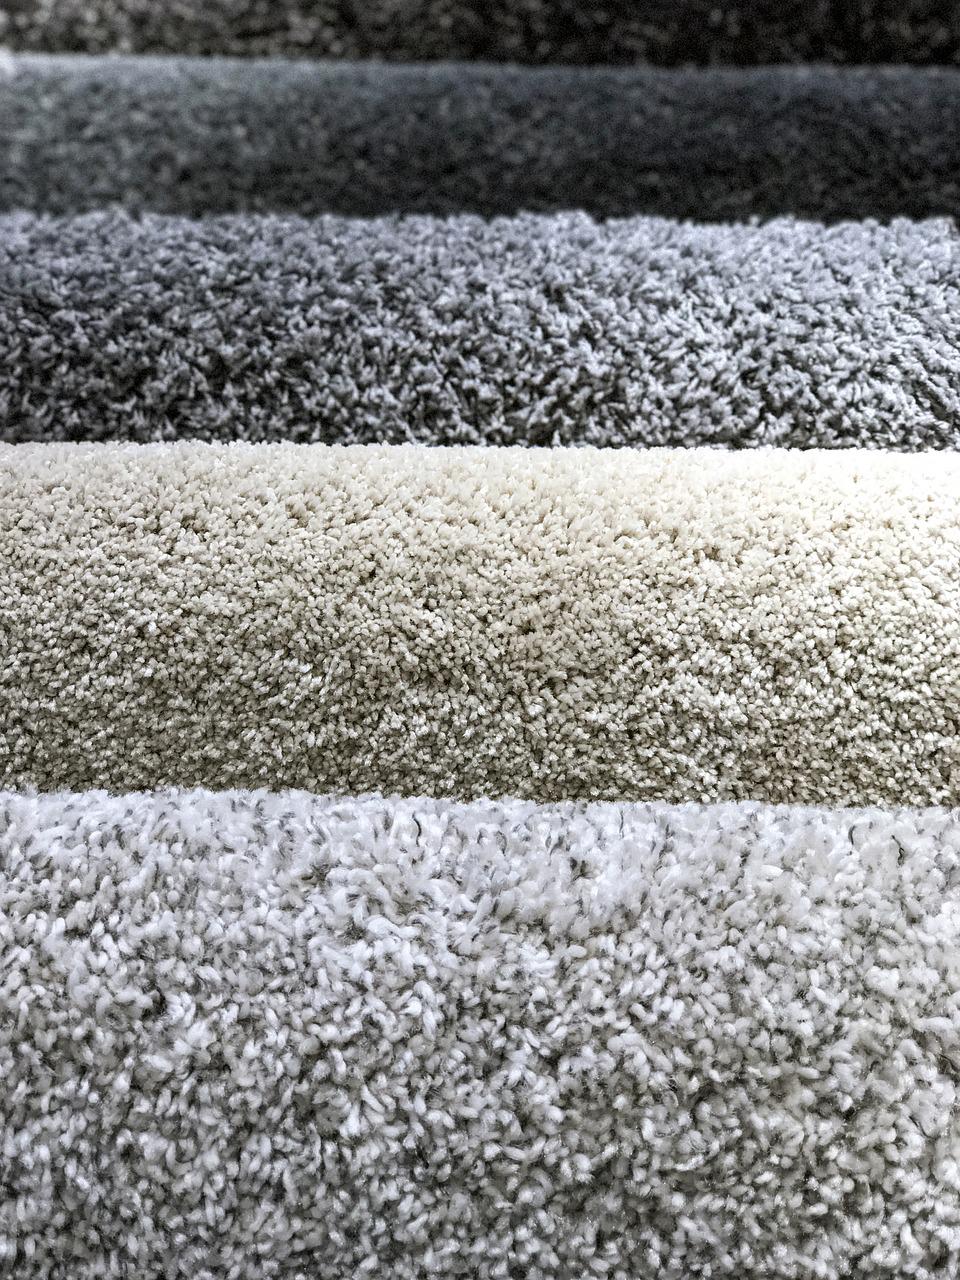 Czyszczenie i konserwacja dywanów – najlepsze wskazówki, aby uniknąć brudnego dywanu